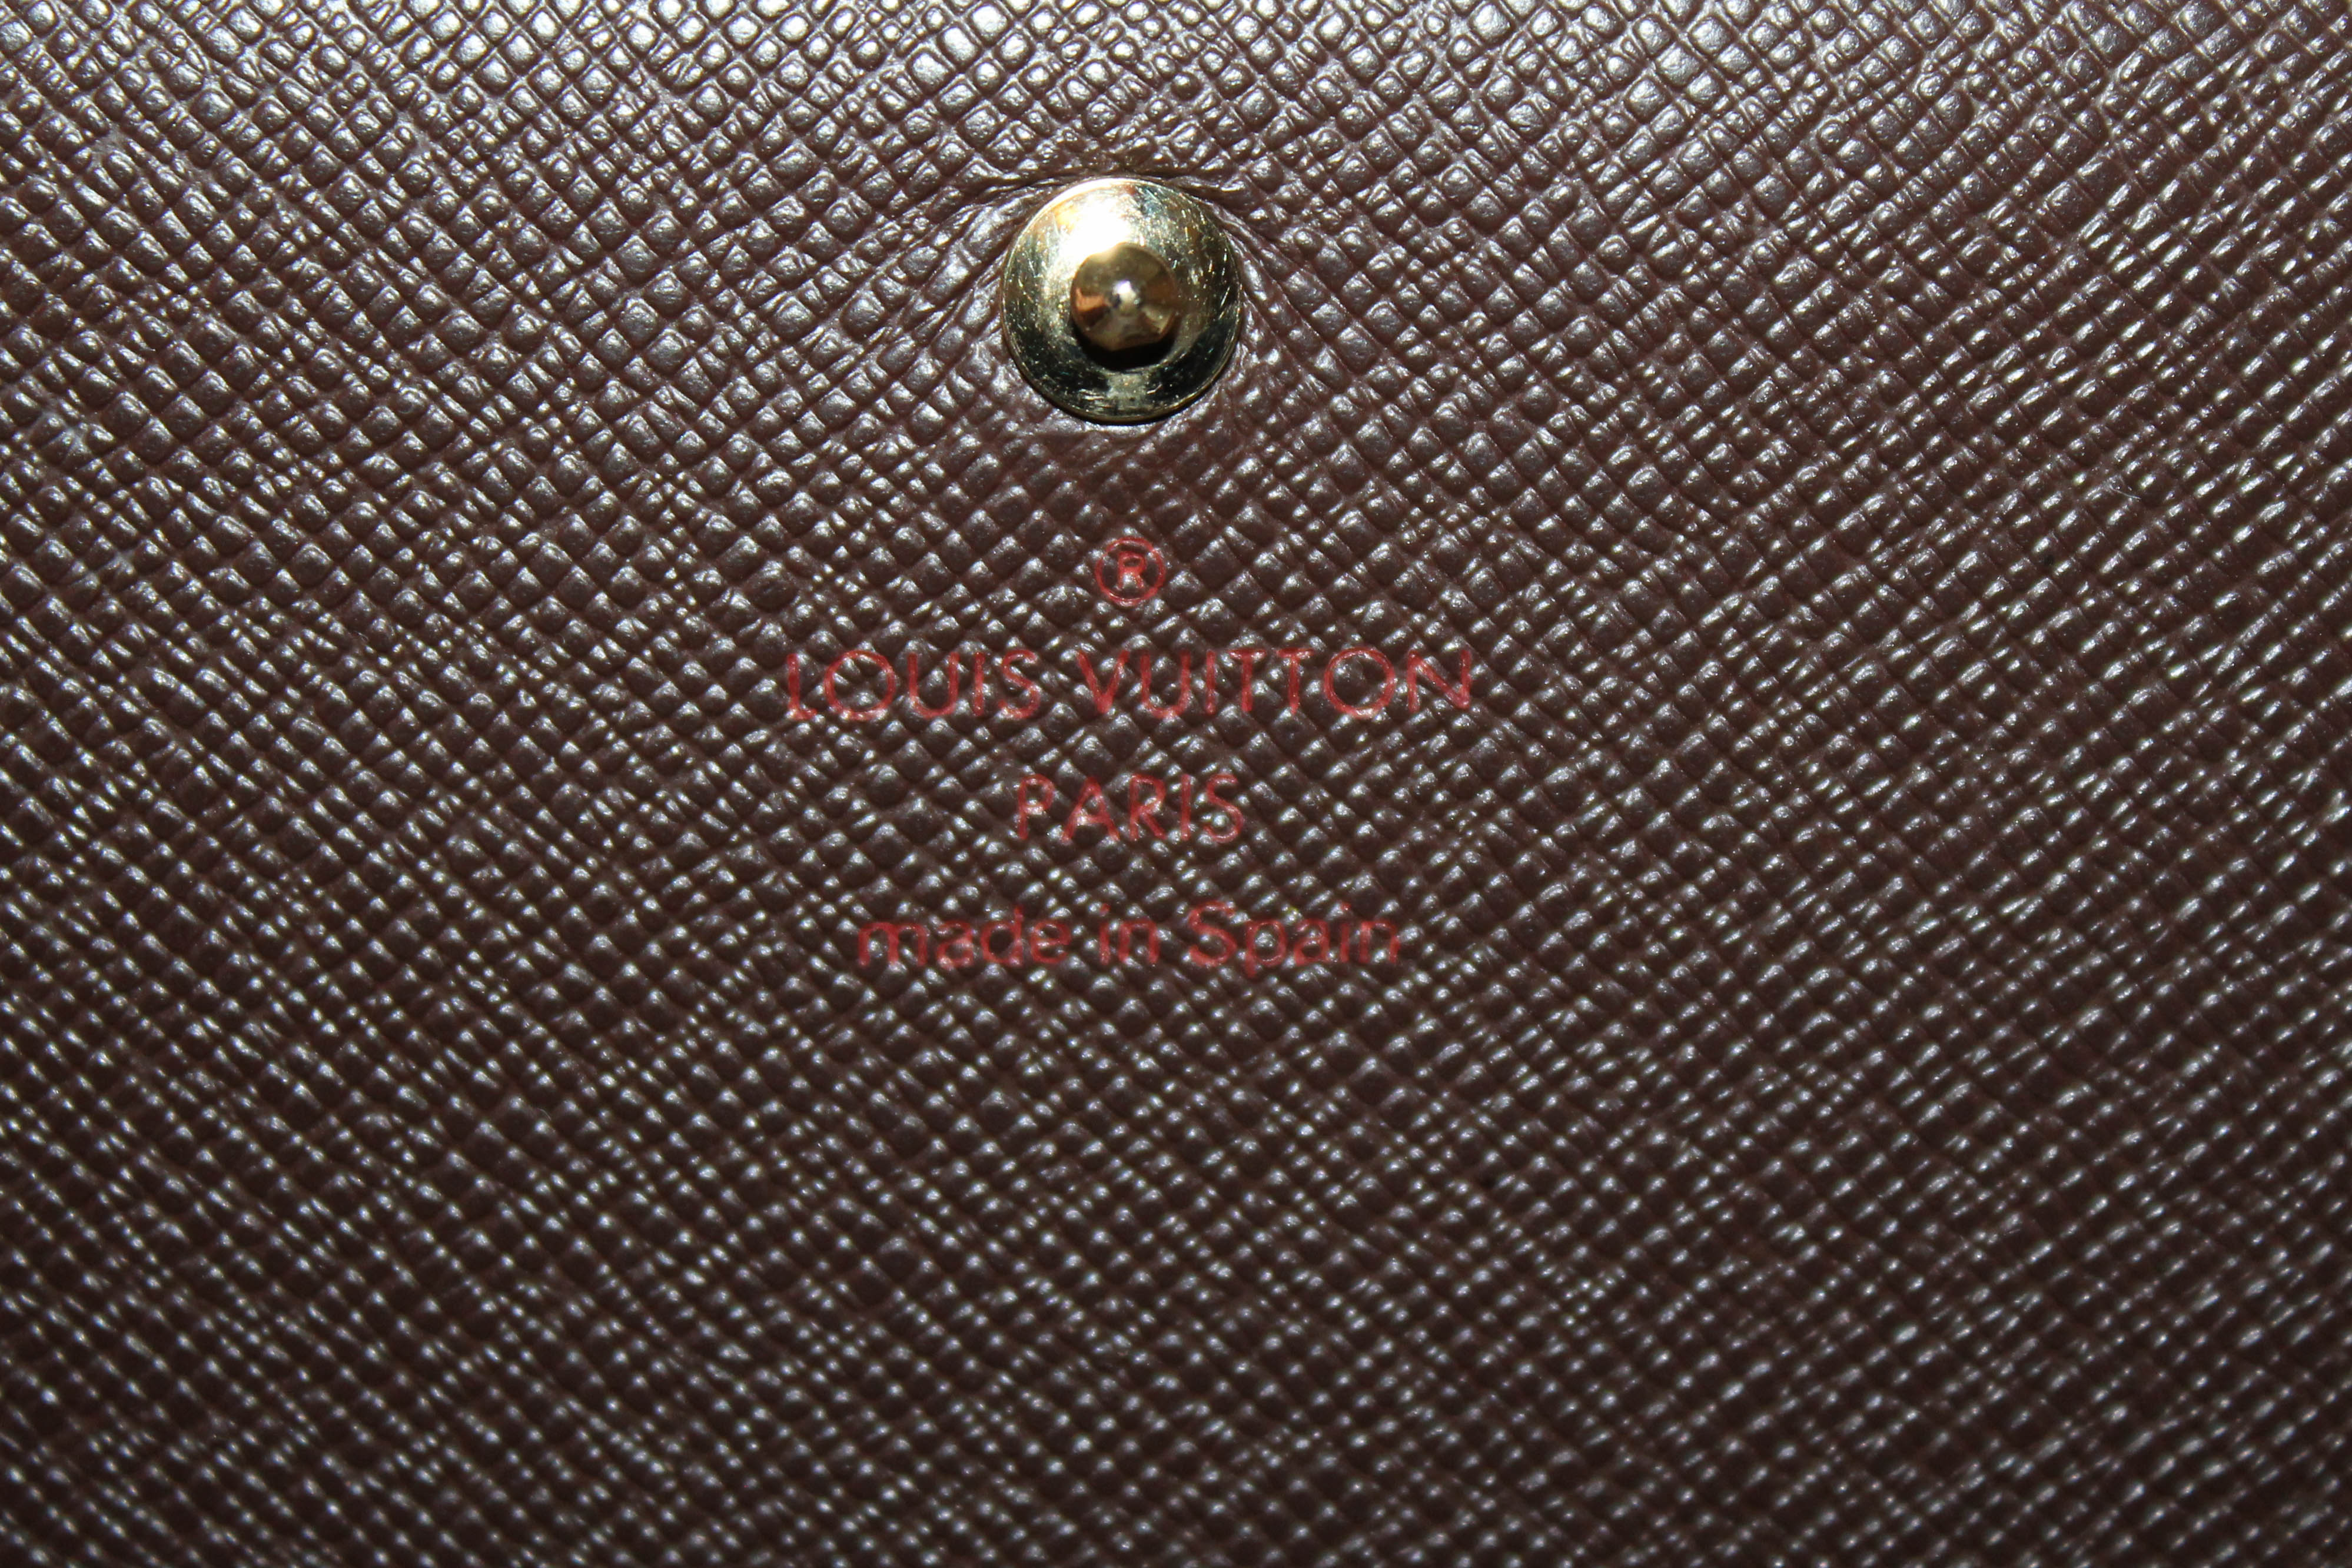 Authentic Louis Vuitton Damier Ebene Tressor Wallet